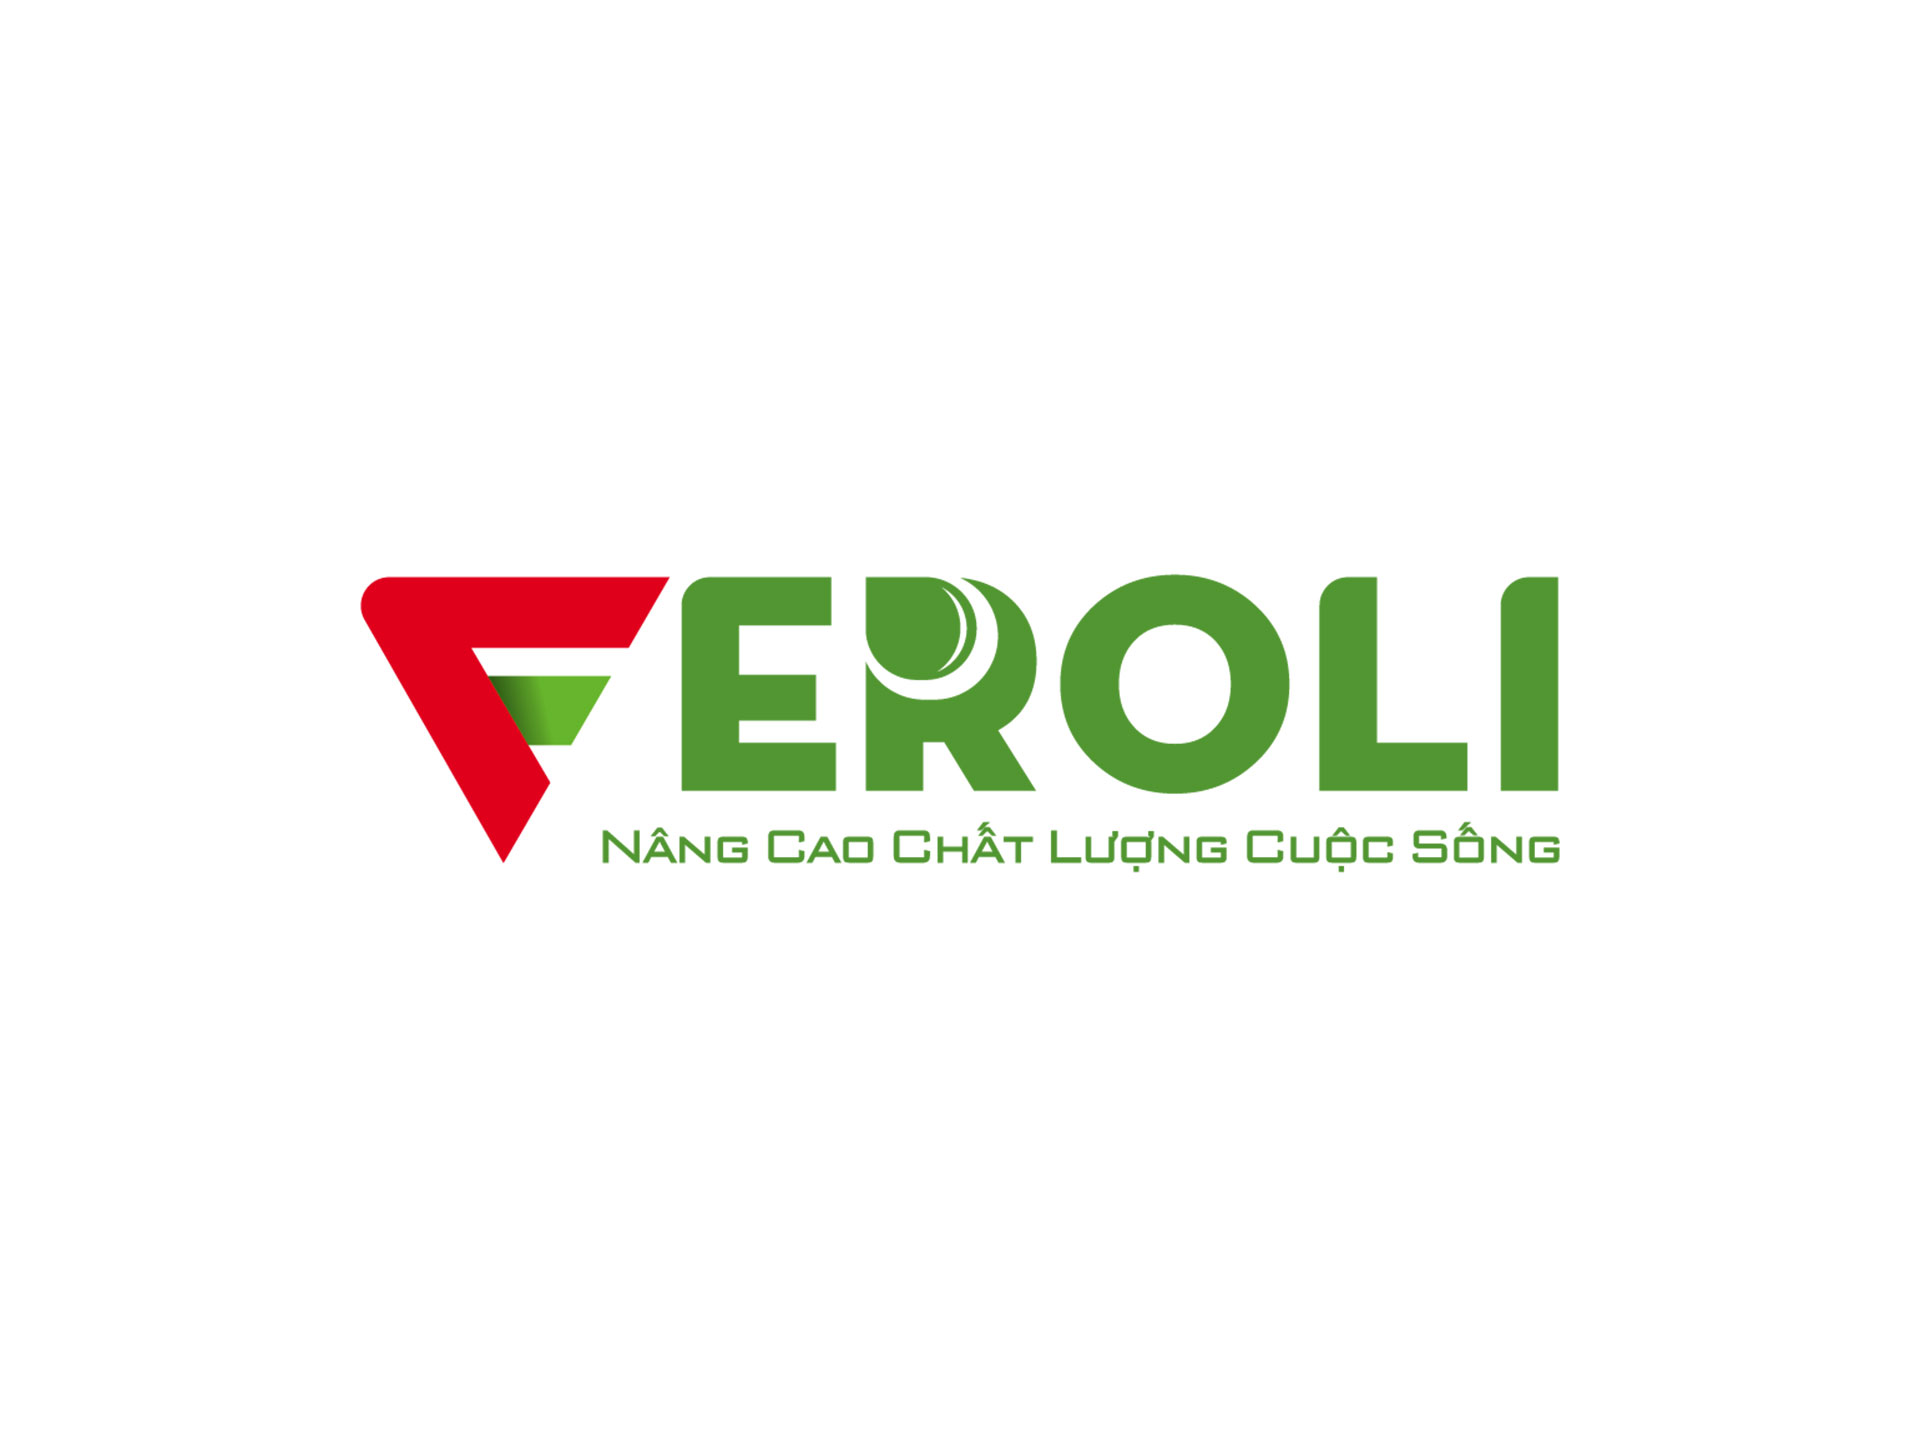 Thiết kế logo máy lọc nước Feroli tại Hà Nội